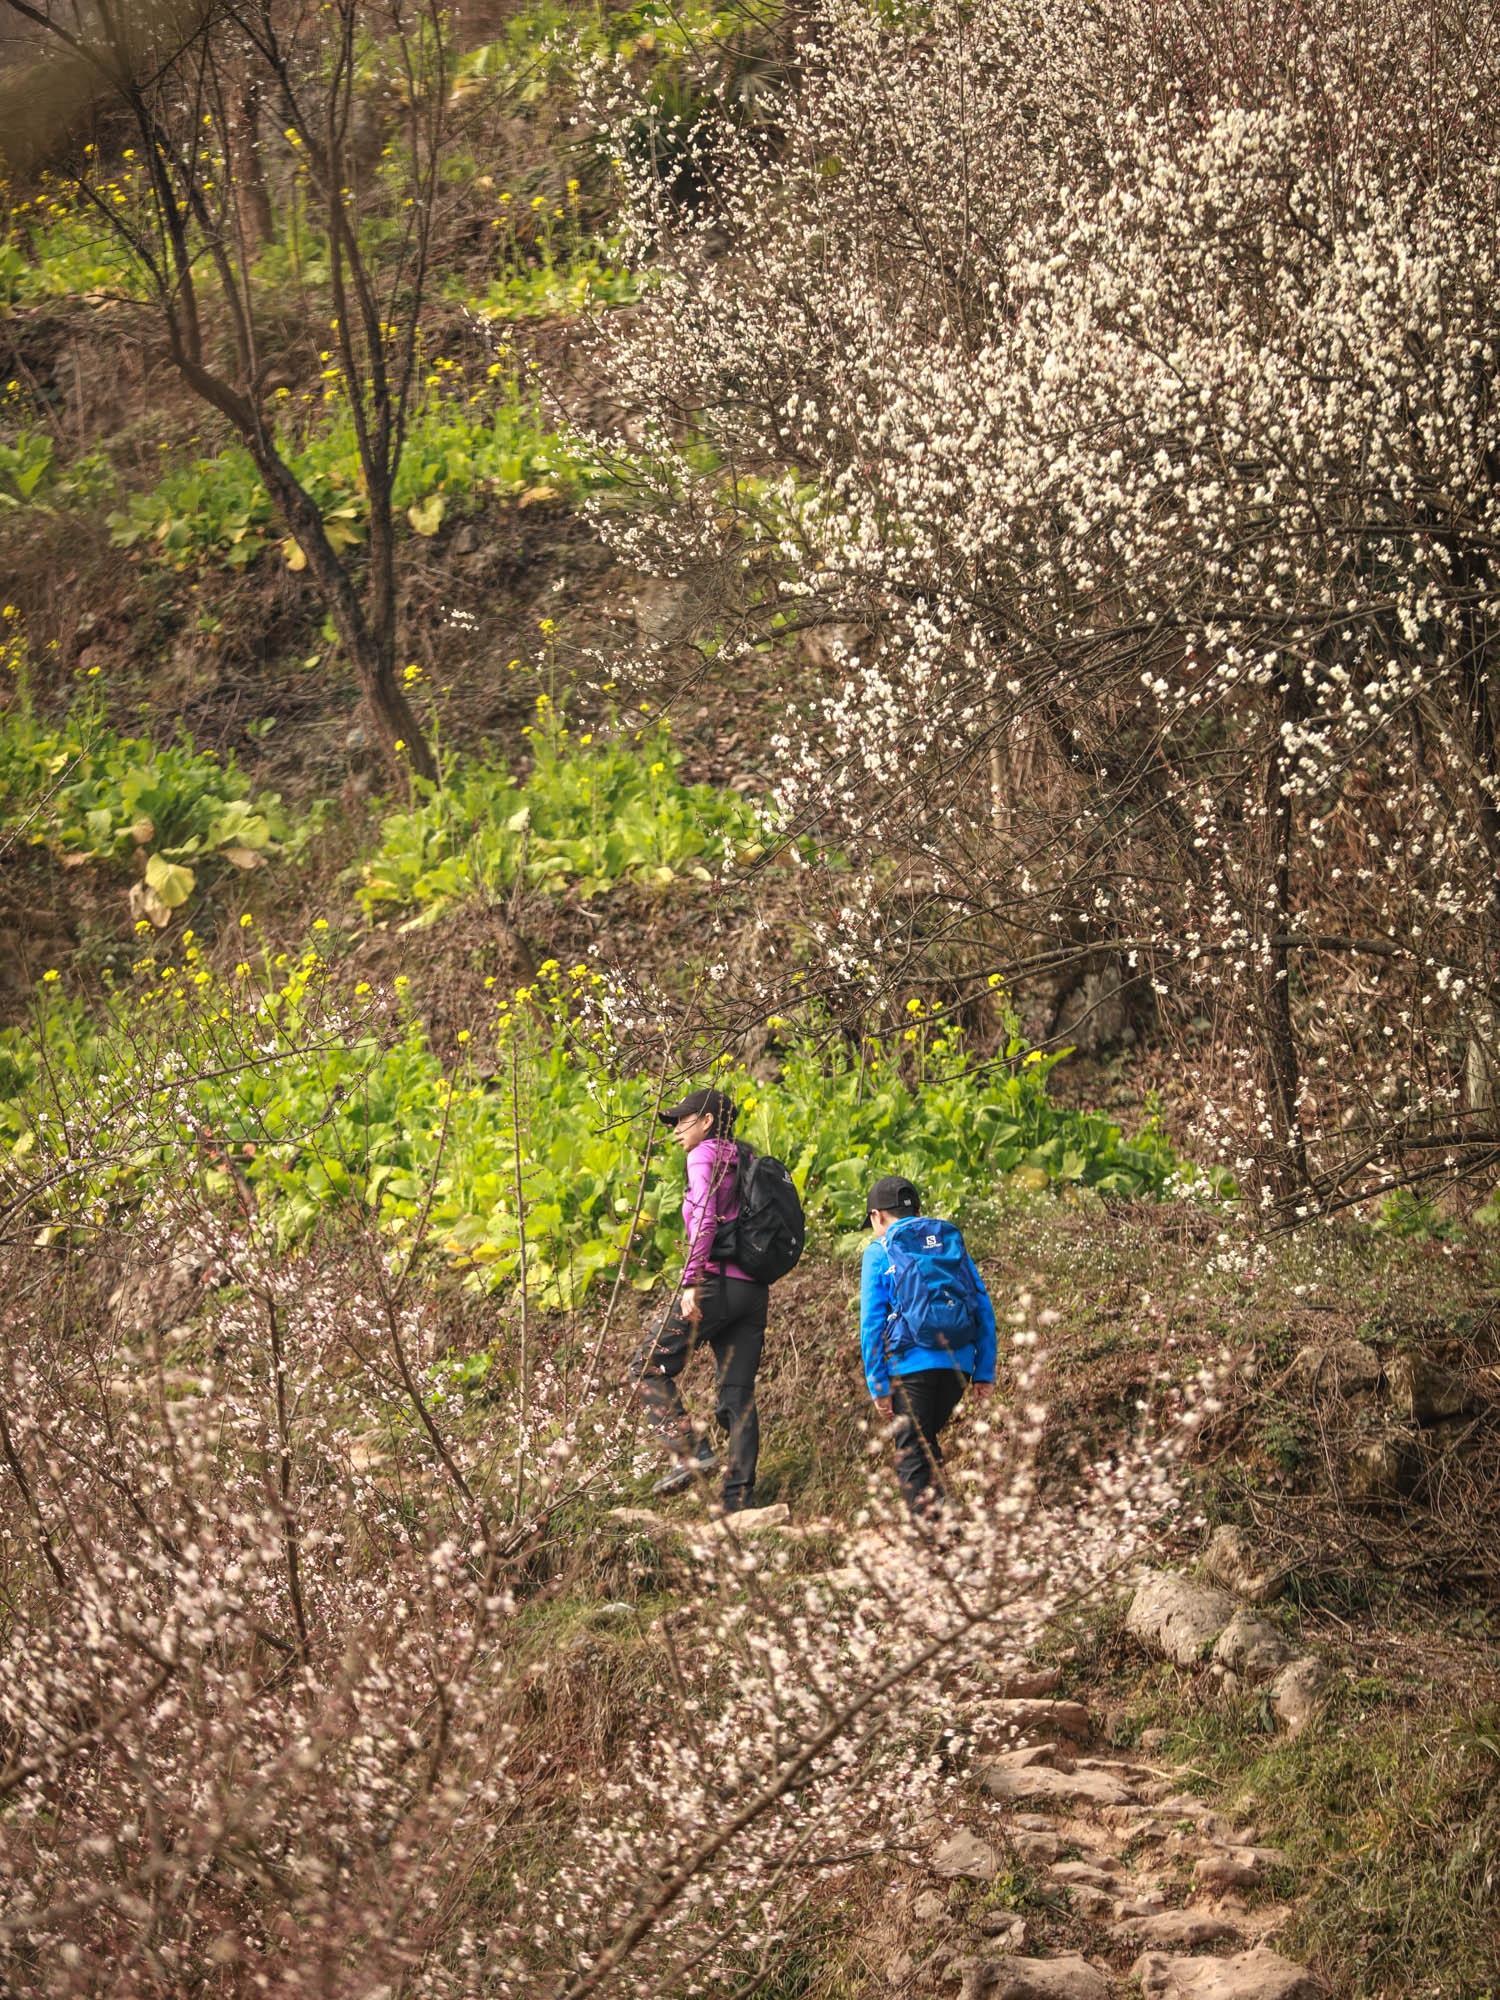 春花烂漫正是徒步时 成都周边最佳赏花路线 每年春天必来一次的轻徒步路线→路程轻松简单、老少皆宜。 春